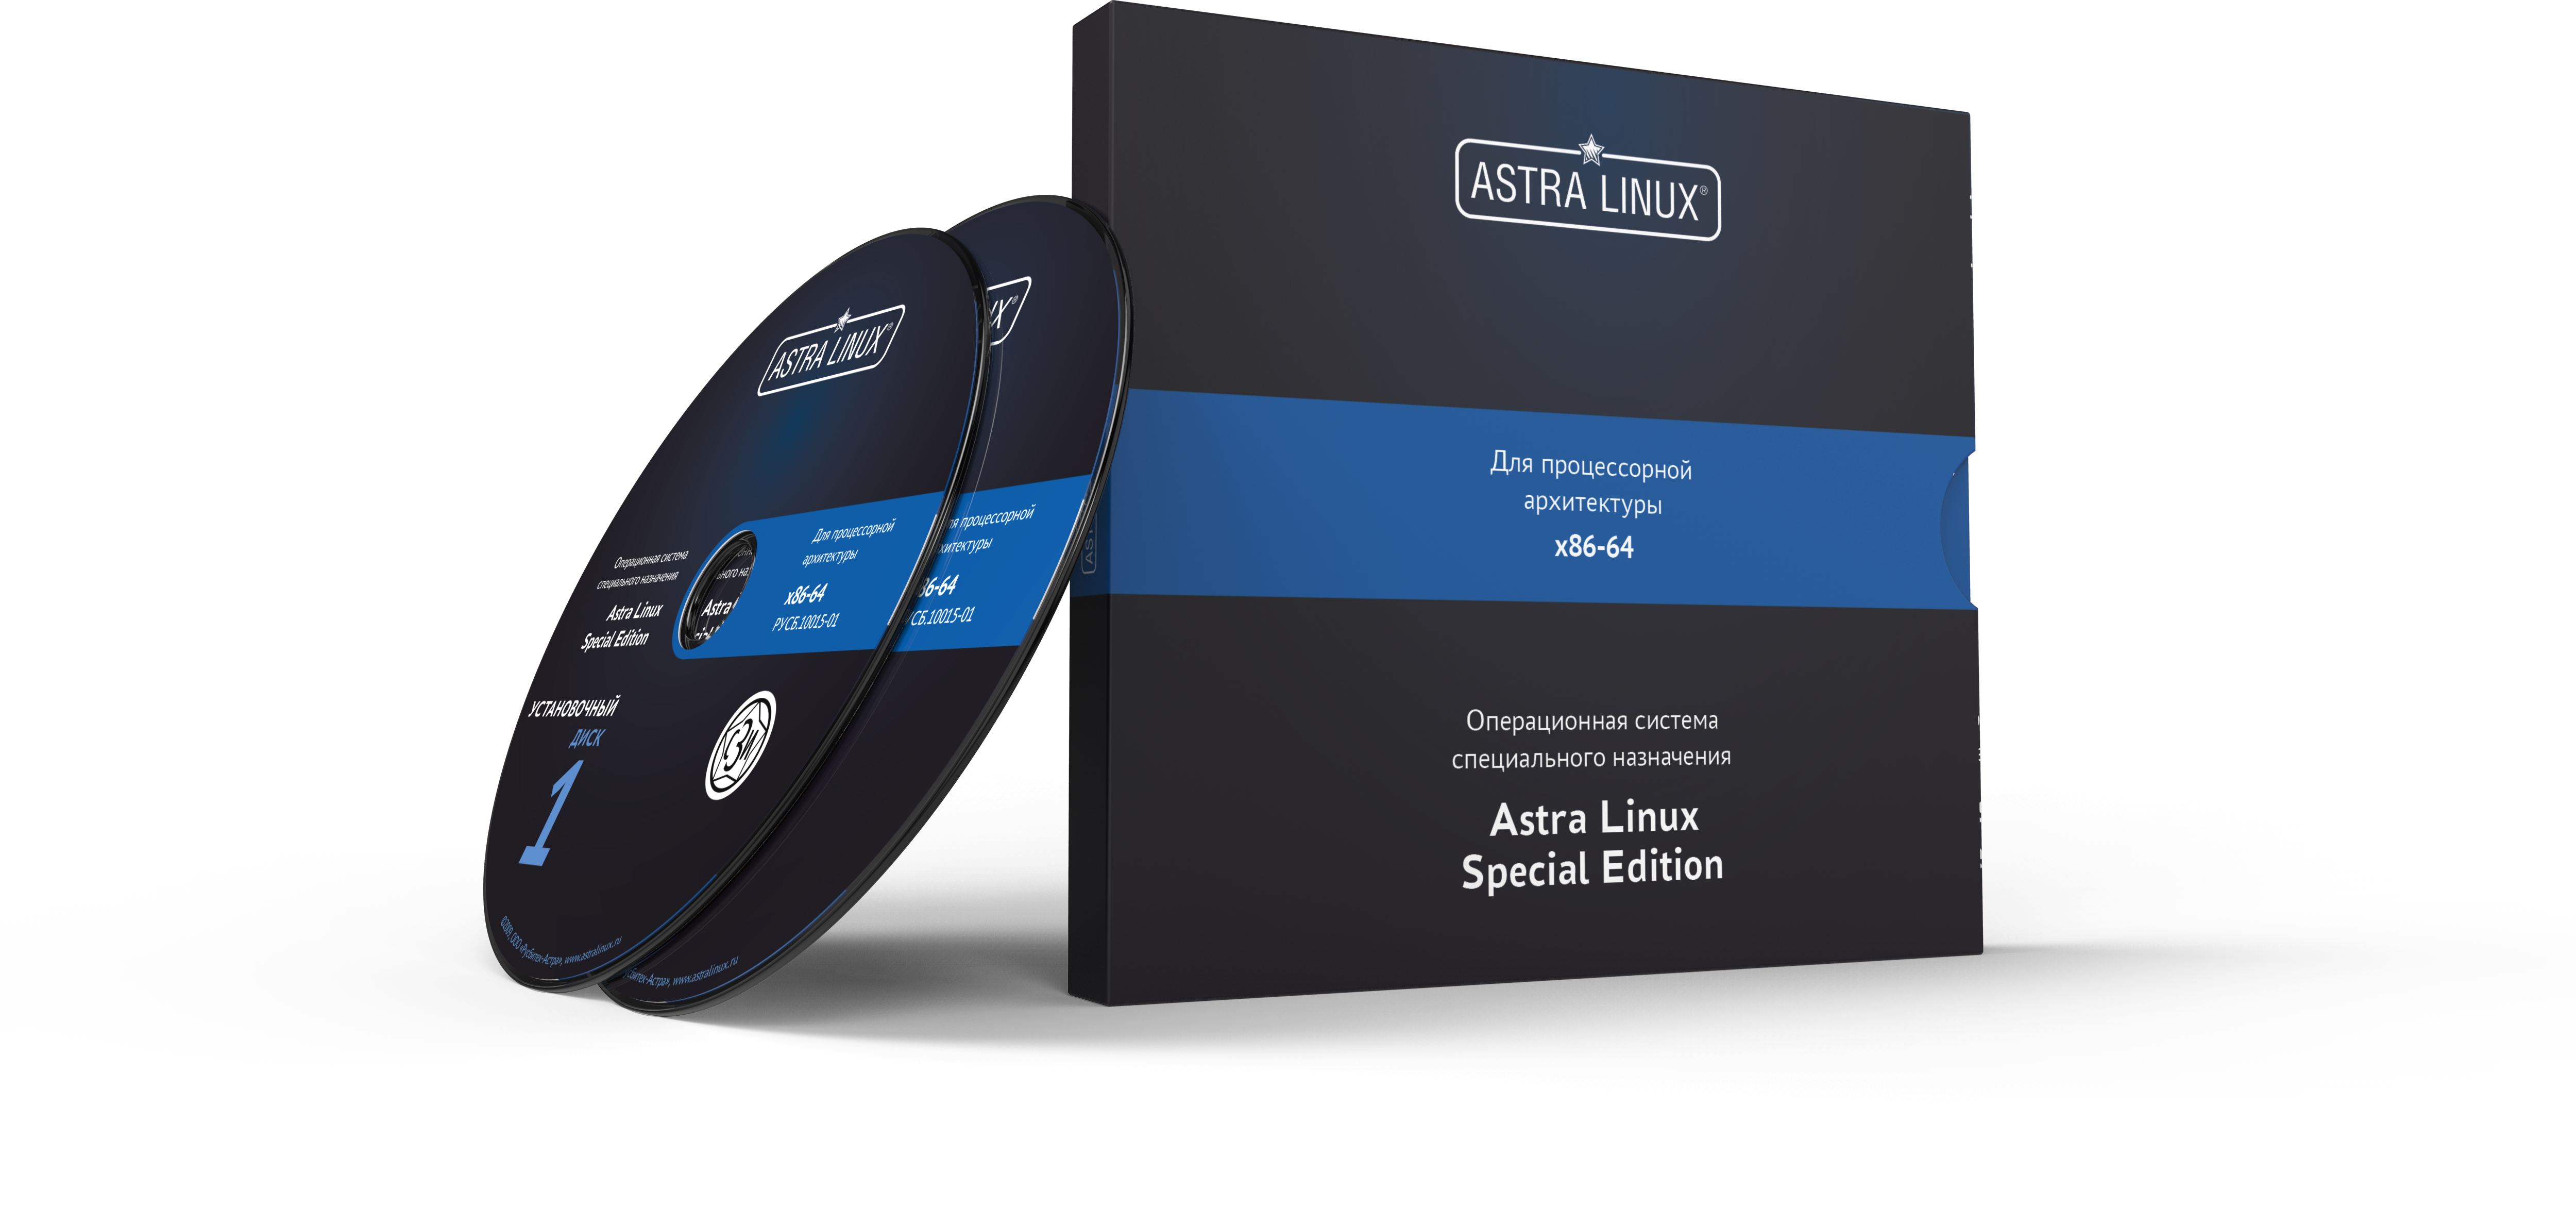 Astra Linux Special Edition 1.7 - Орел, электронный, на 36 мес., ТП "Привилегированная" на 36 мес.